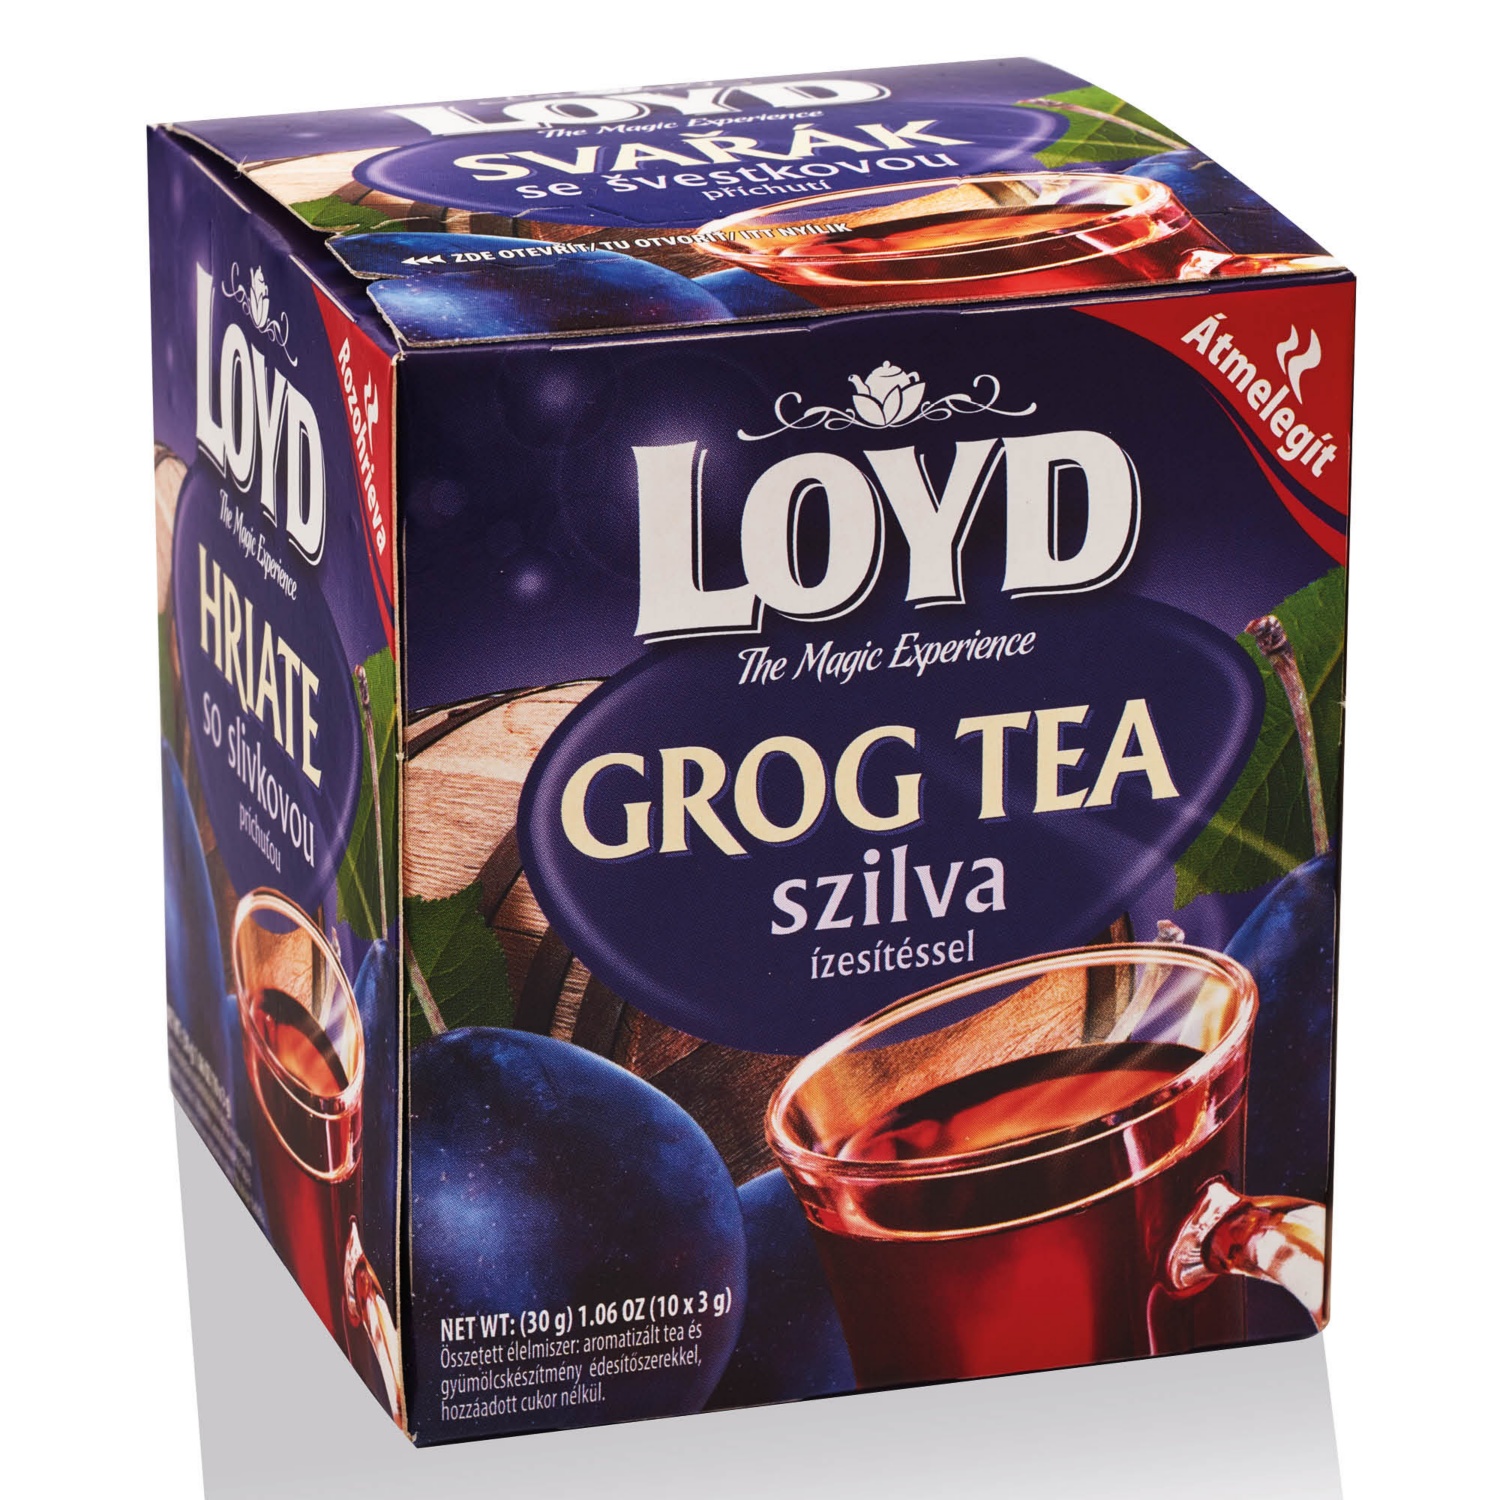 LOYD TEA Grog tea szilva ízesítéssel, 10 x 3 g